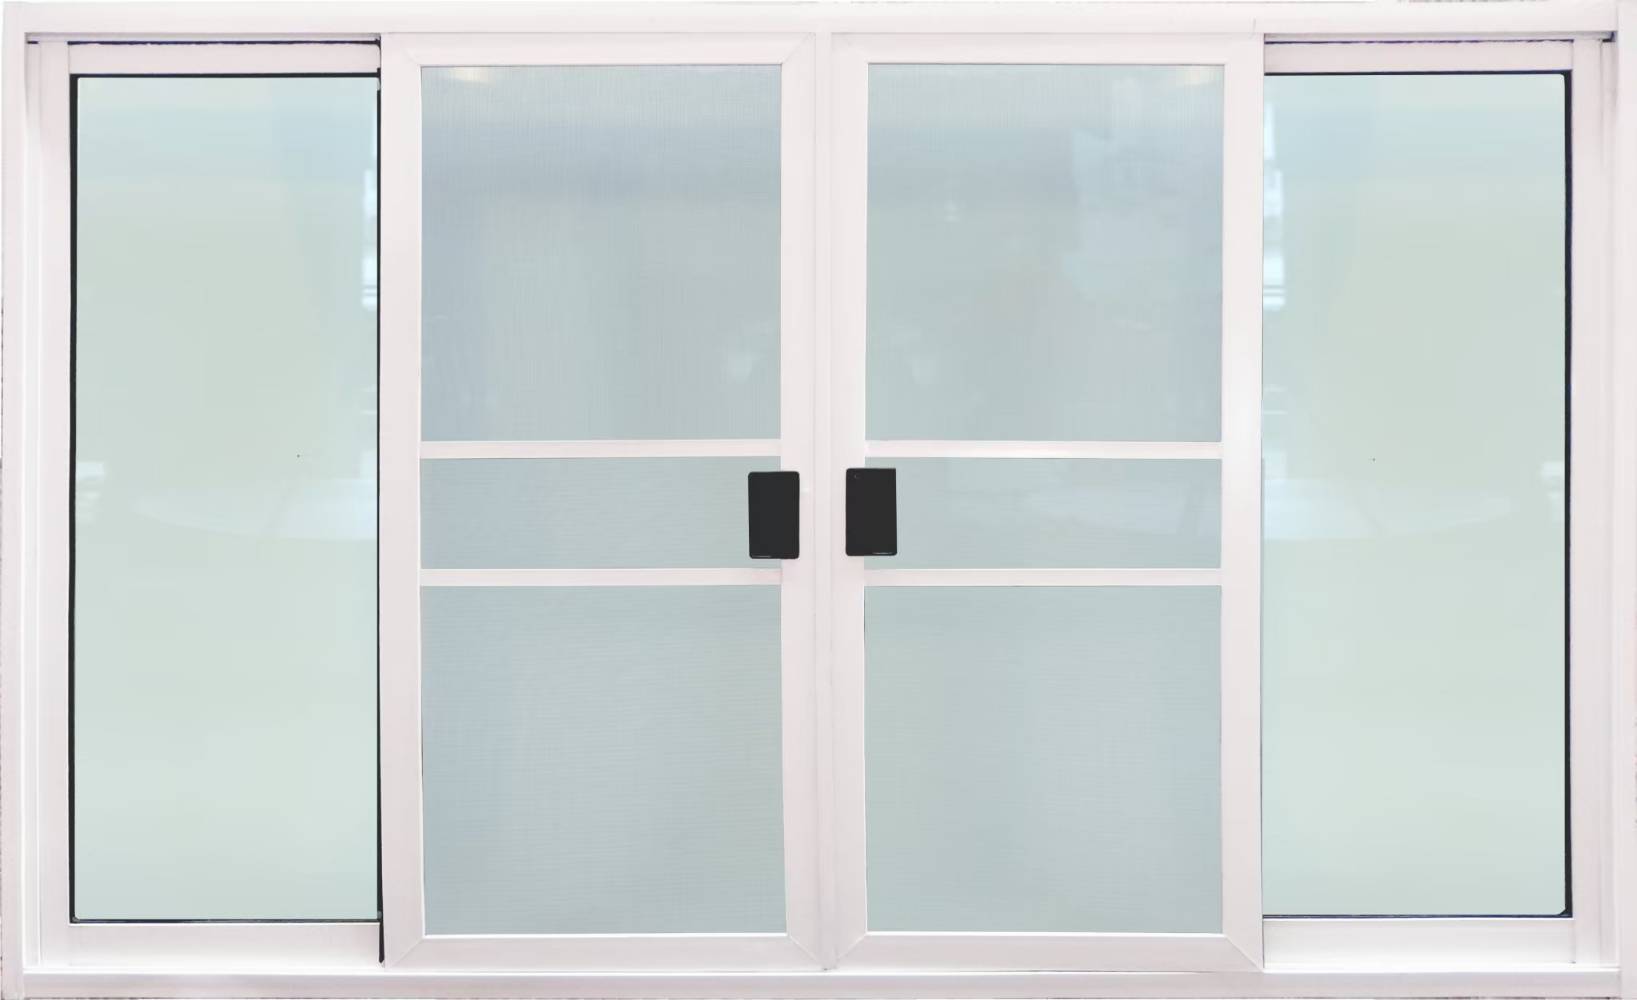 หน้าต่างบานเลื่อน 4ช่อง อลูมิเนียมสีอบขาว+กระจกใสเขียว+มุ้ง 182ซม.*105ซม.